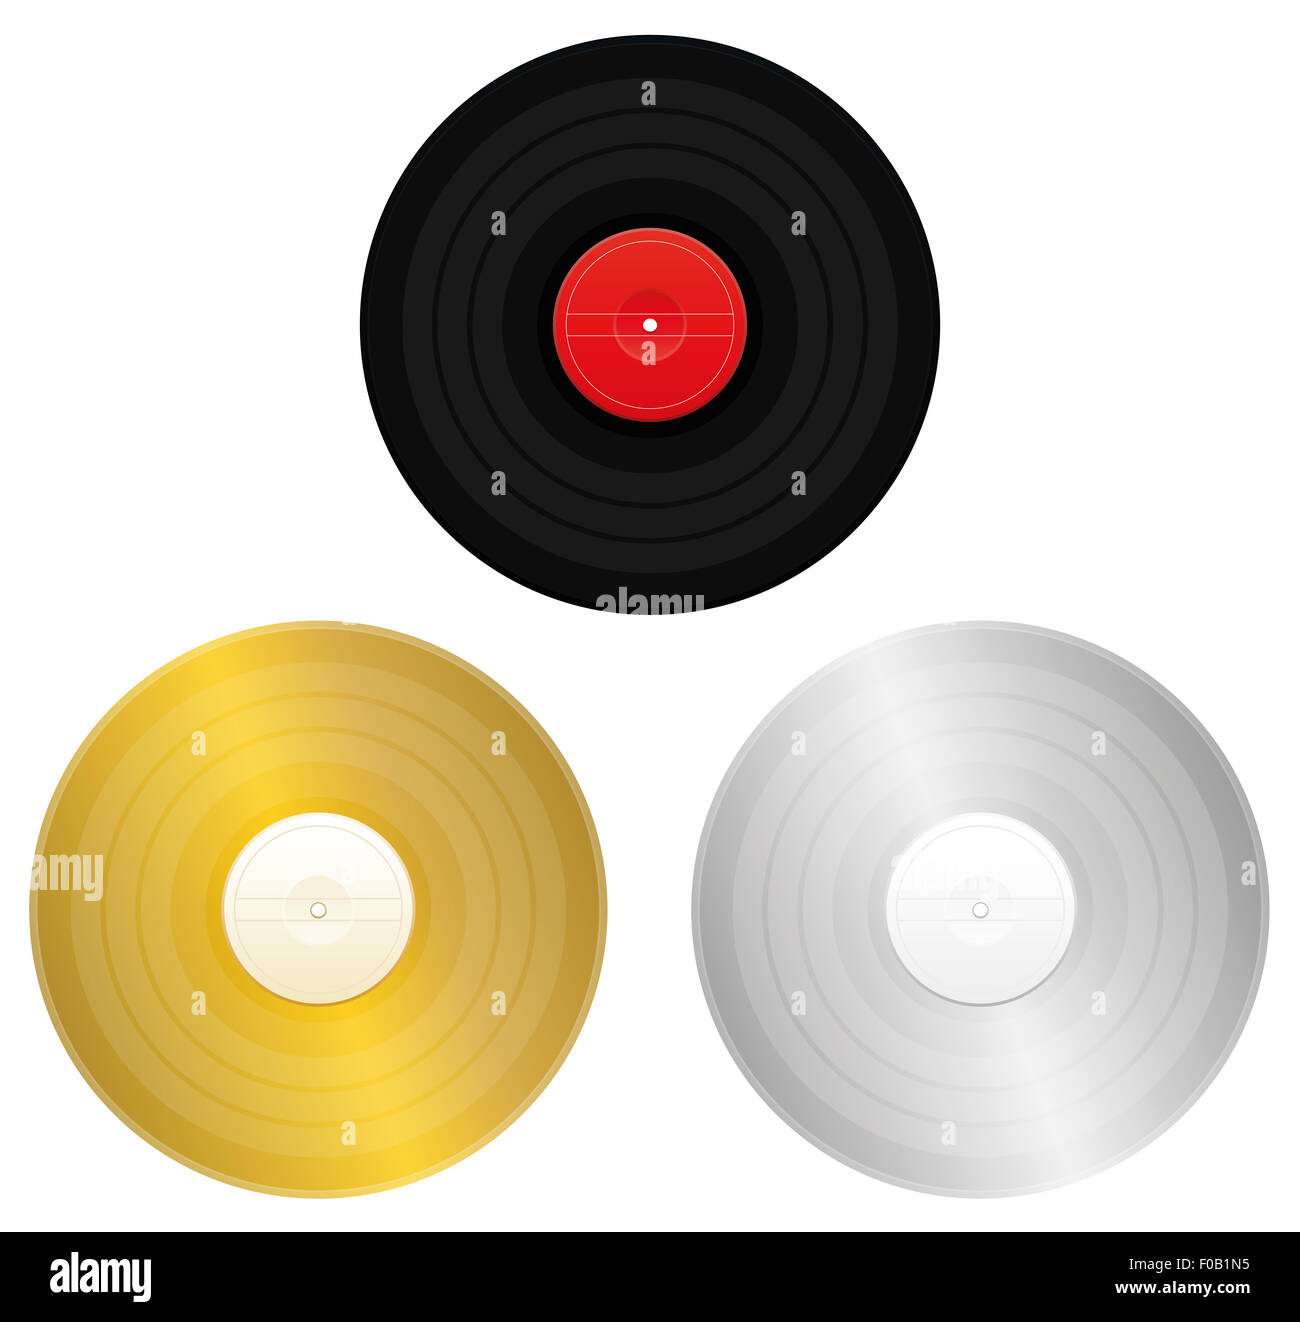 Records - schwarz, gold, Silber oder Platin Rekord für Award oder Zertifizierung. Abbildung auf weißem Hintergrund. Stockfoto